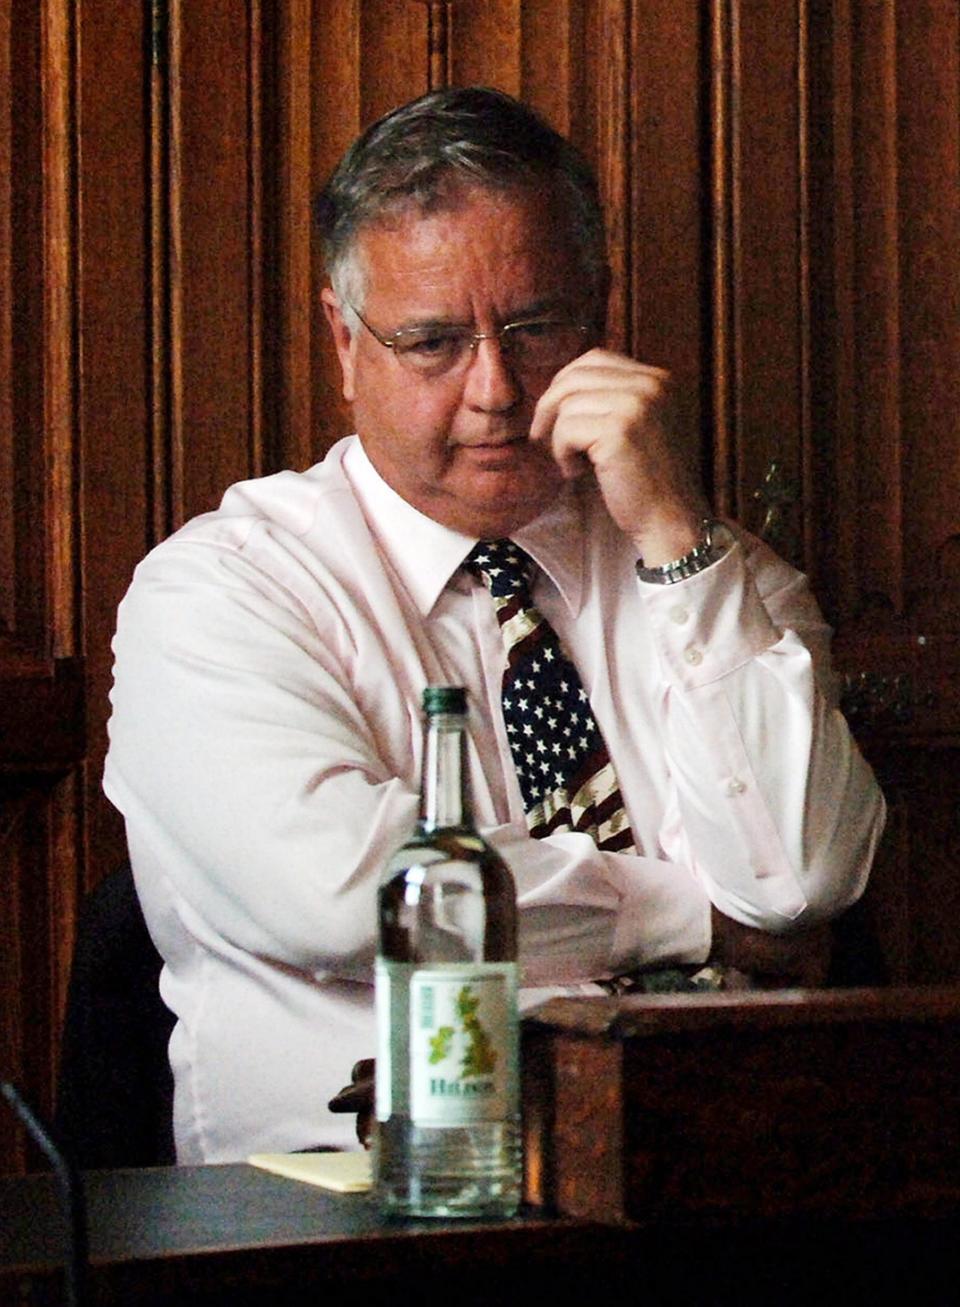 David Wilshire in 2007